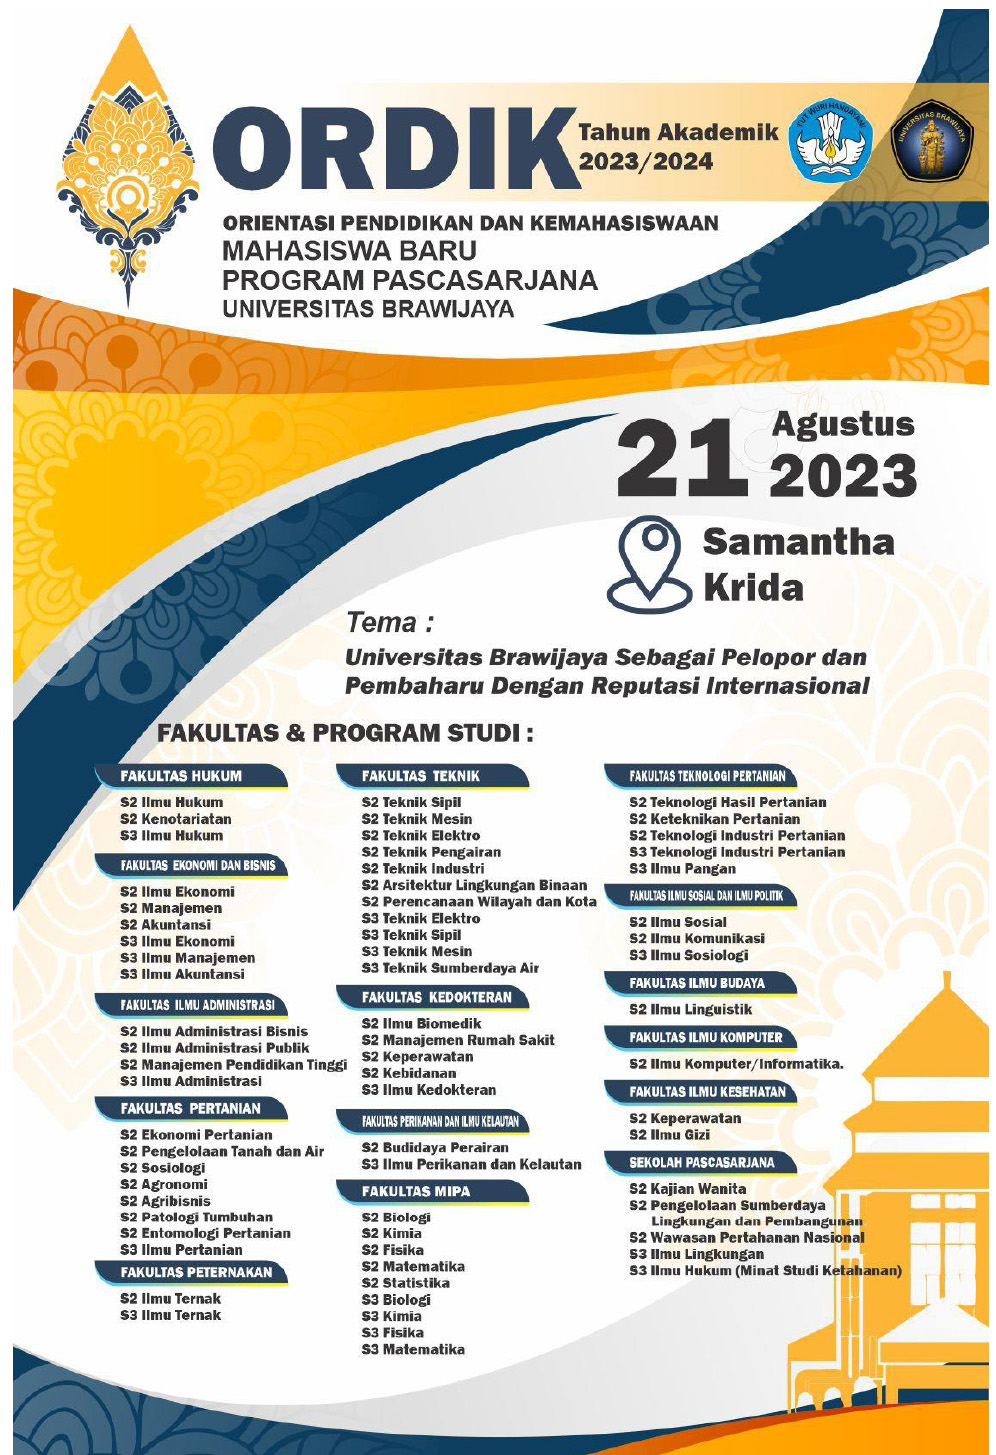 Pelaksanaan Ordik Mahasiswa Program Pascasarjana di Lingkungan Universitas Brawijaya TA. 2023/2024